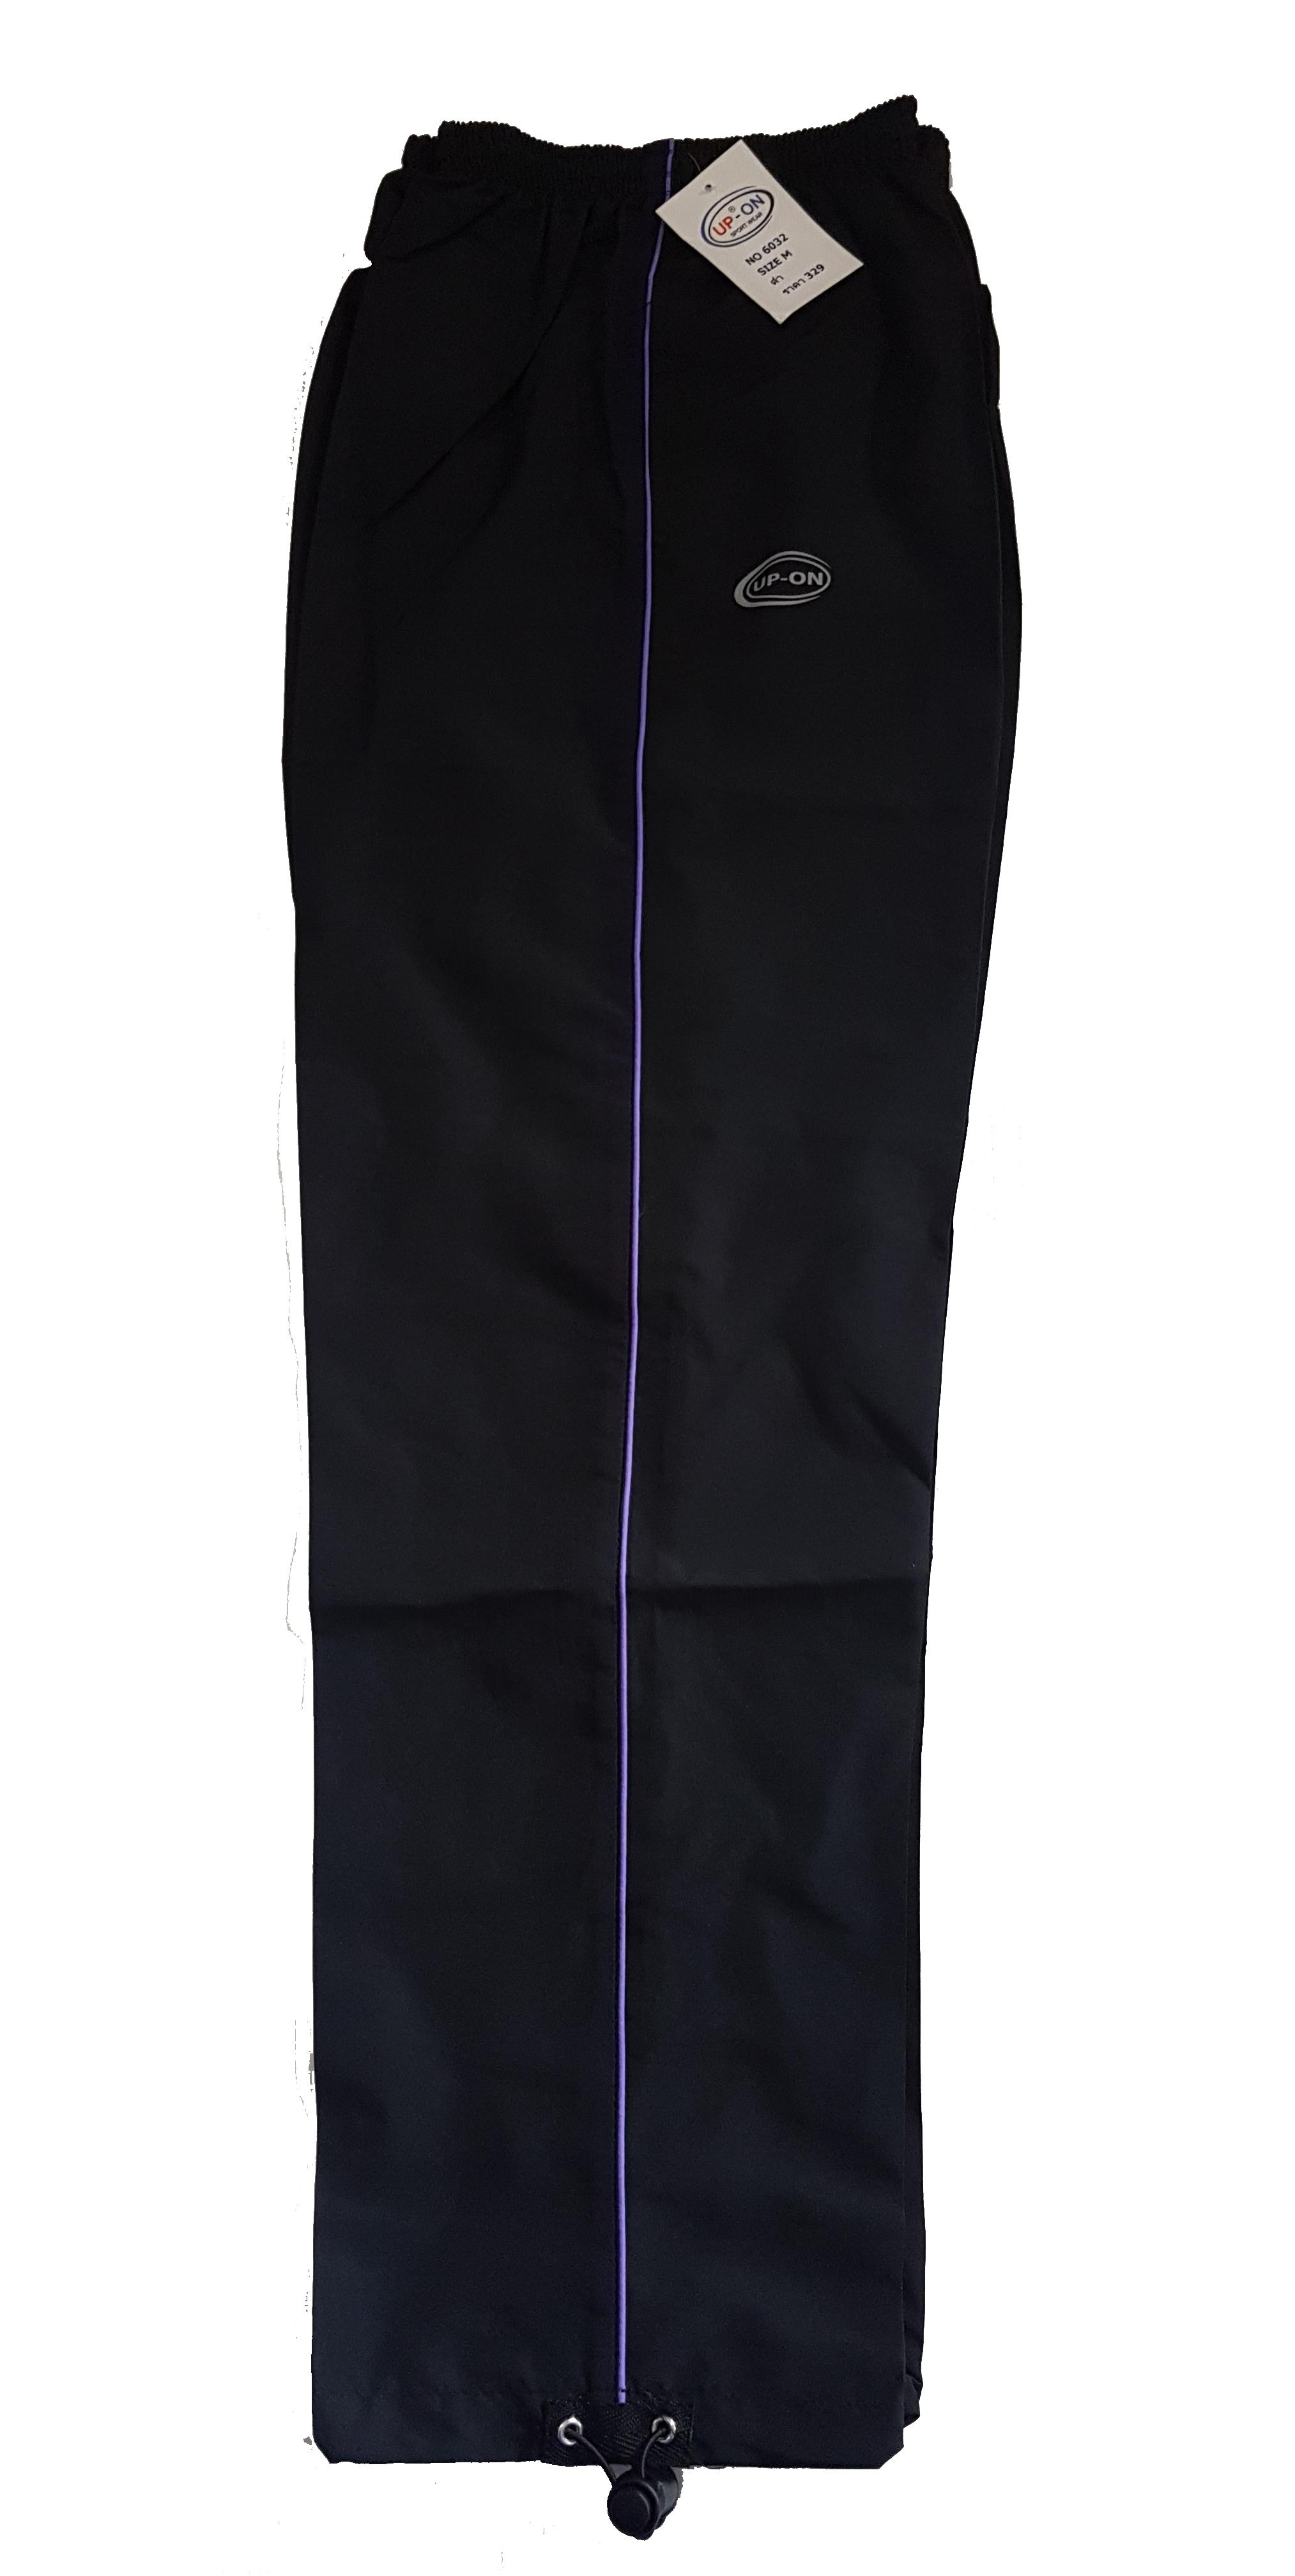 กางเกงผ้าร่มขายาว สีดำ แถบเส้นเดียว ยี่ห้อ UP-ON  Made in Thailand! ใส่ได้ทุกเพศทุกวัย ไม่มีซัพใน